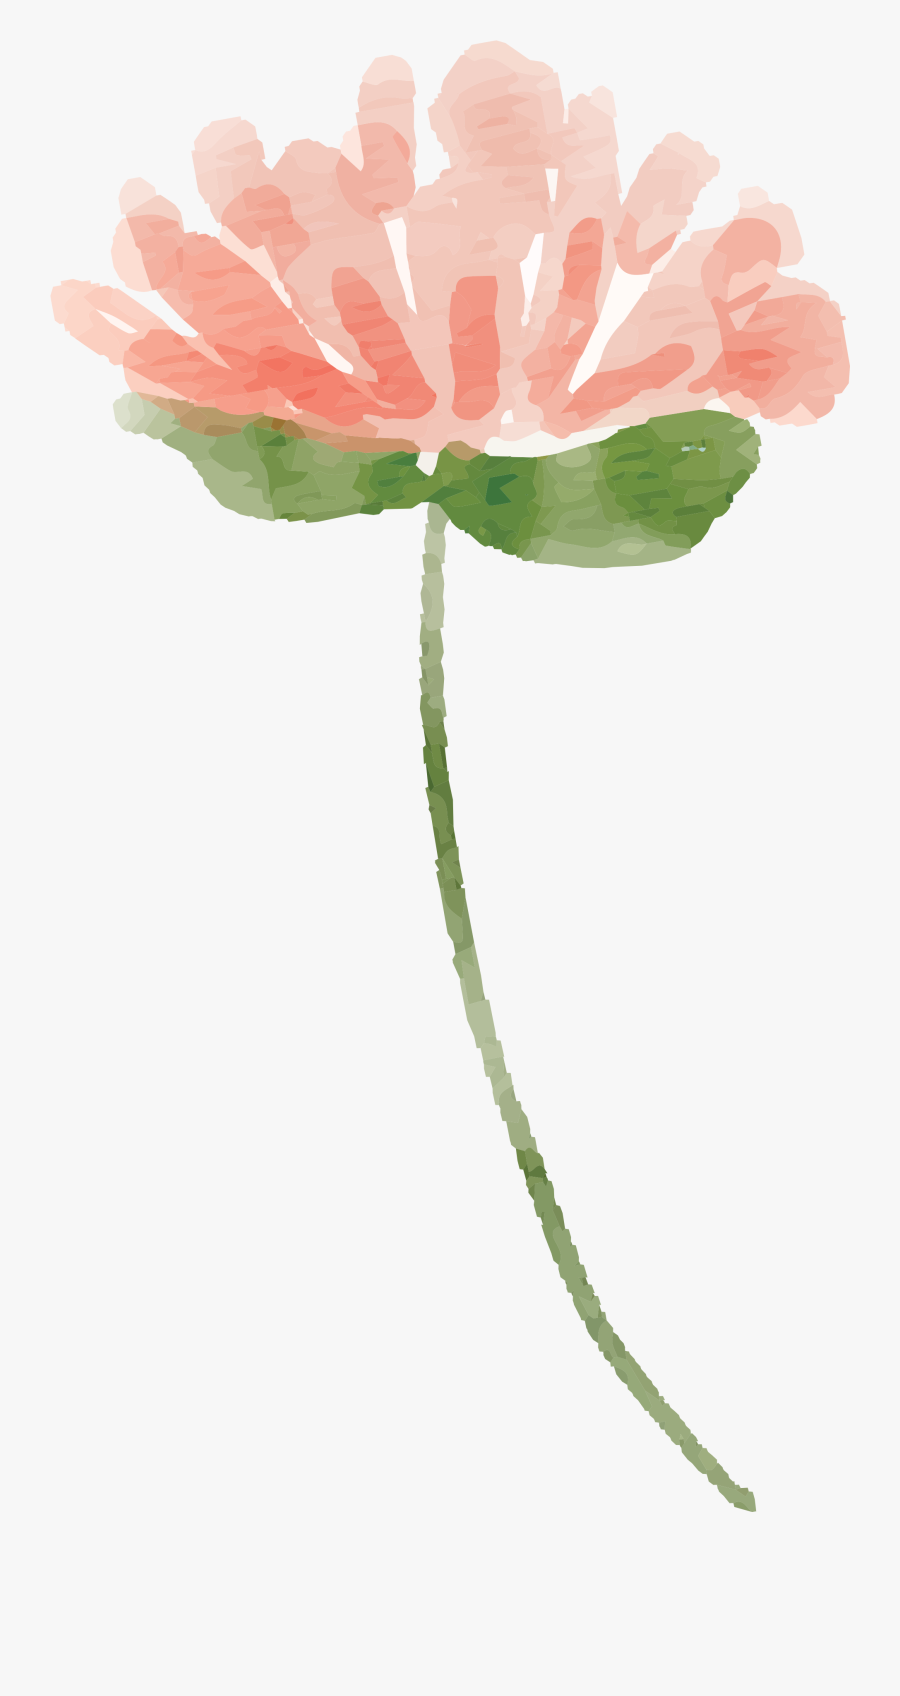 Free Flower Images Peach - Flower Watercolour Png Transparent, Transparent Clipart